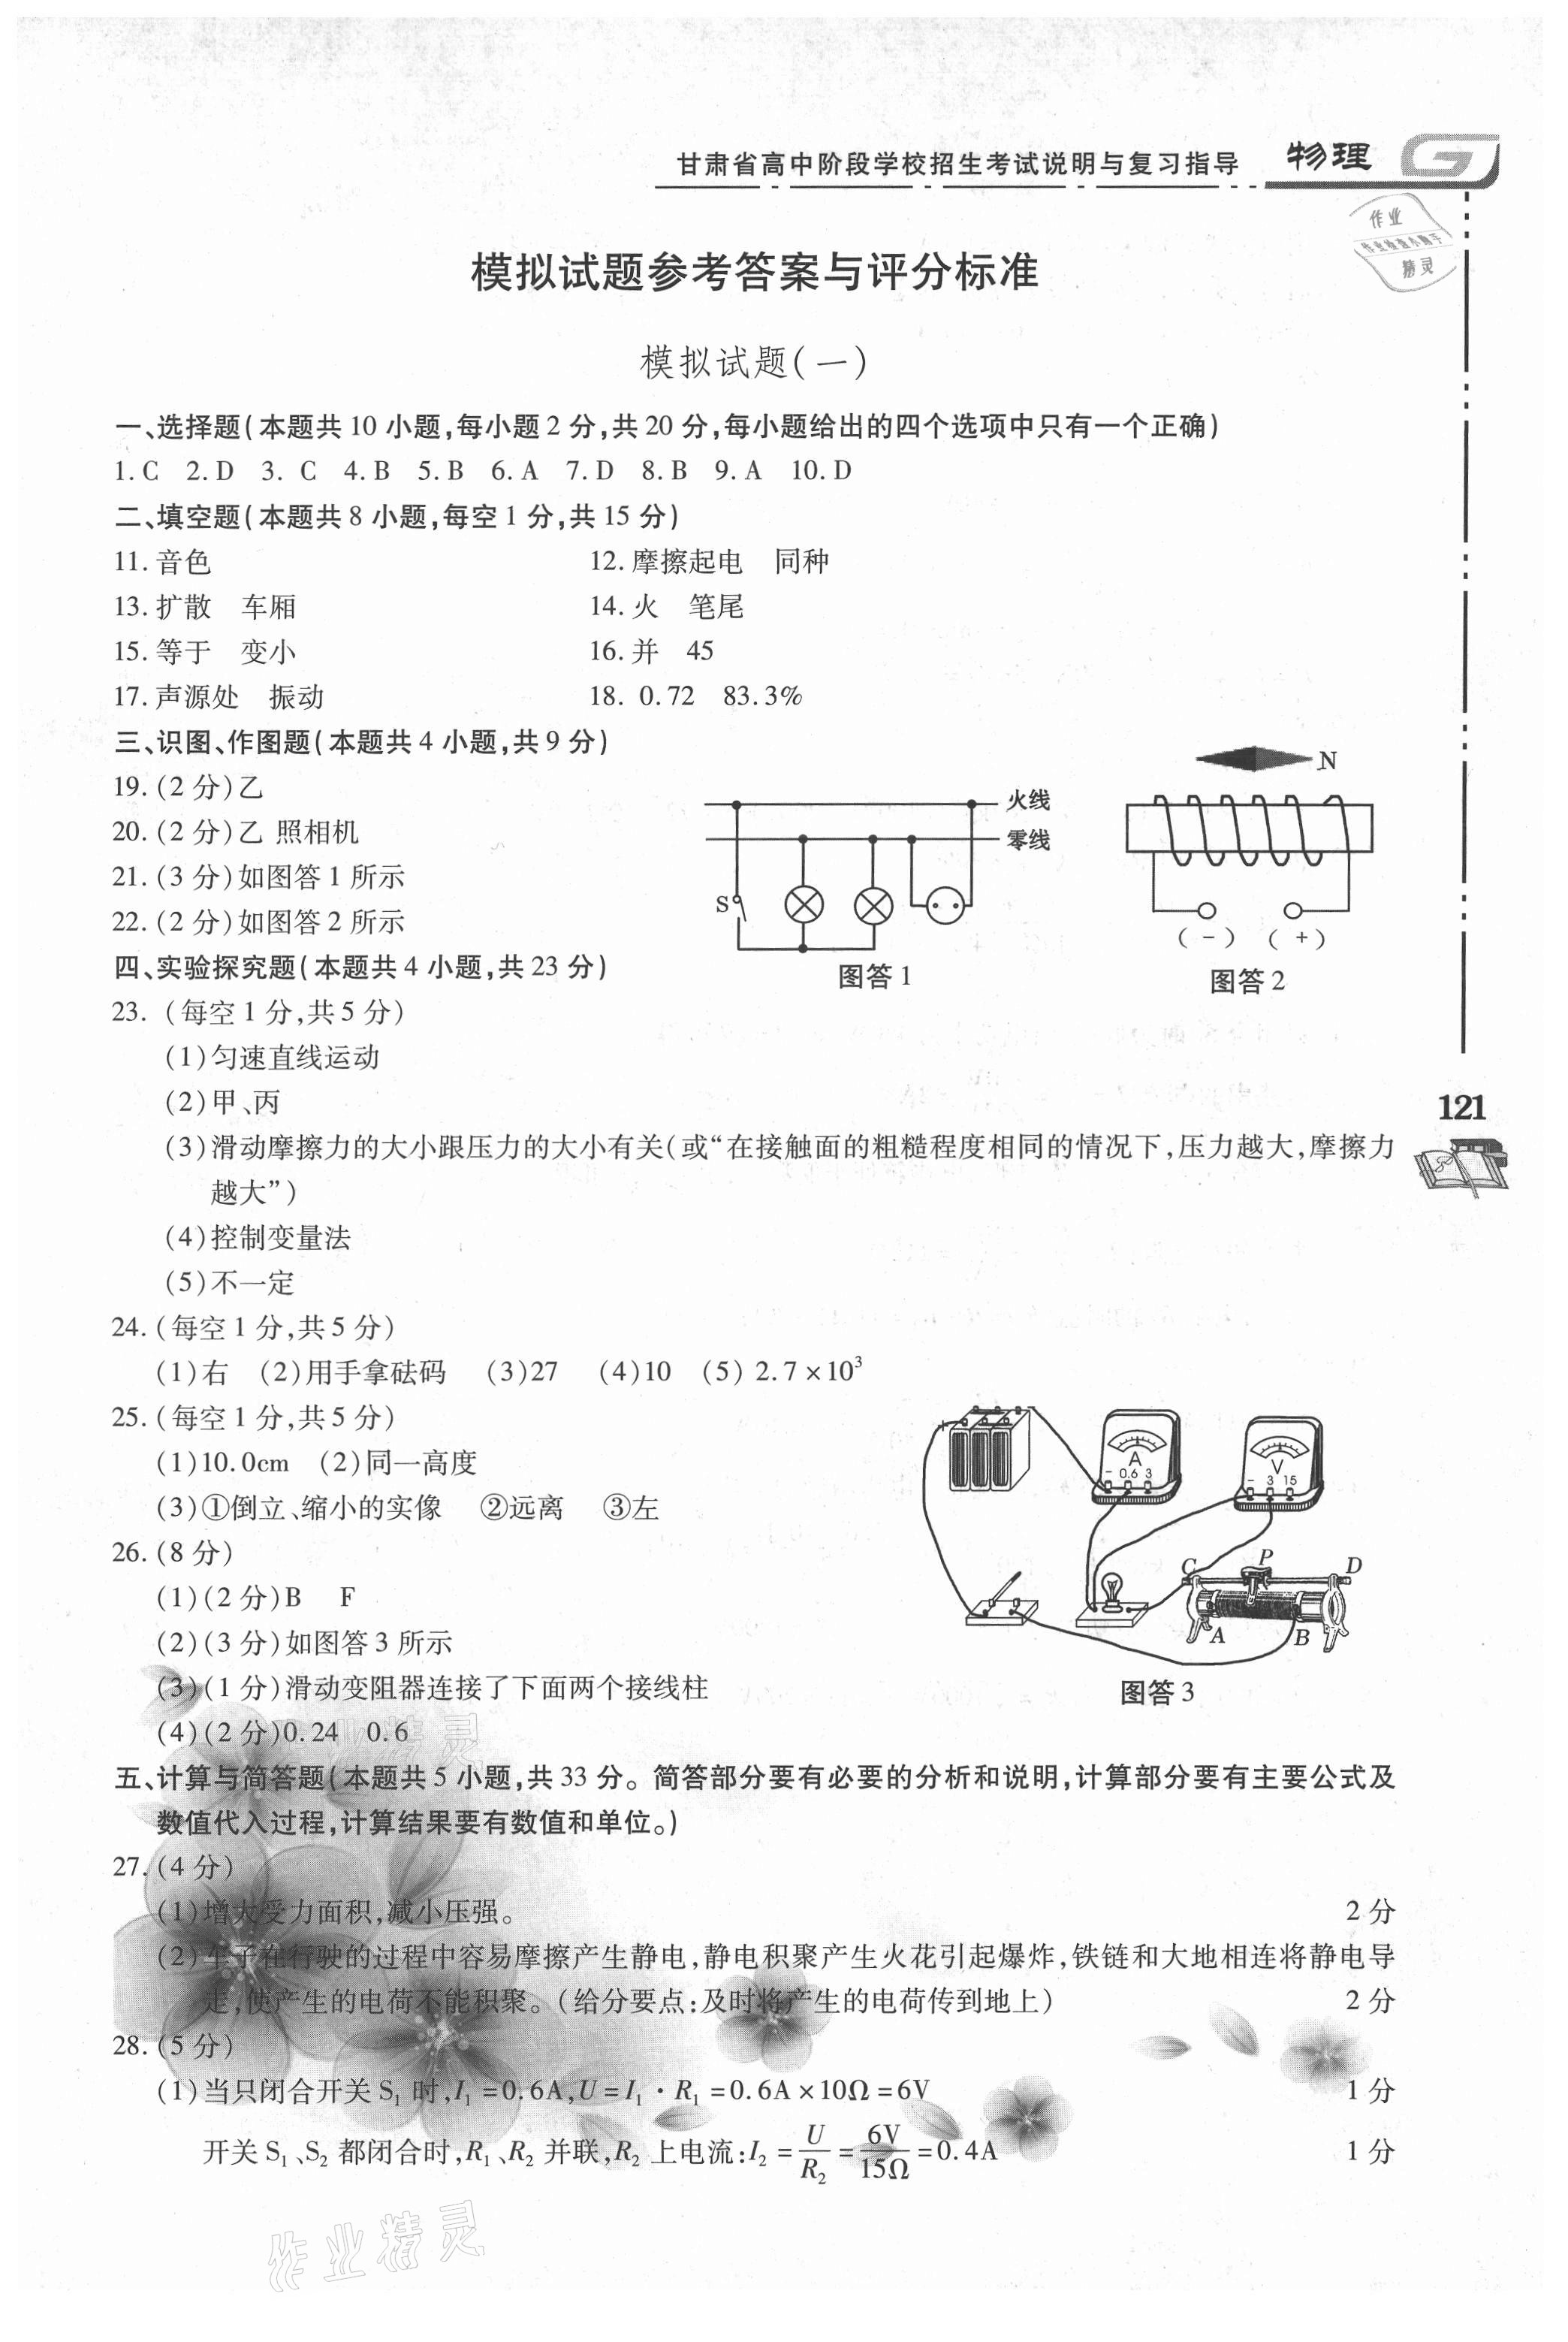 2021年甘肃省高中阶段学校招生考试说明与复习指导物理 第1页